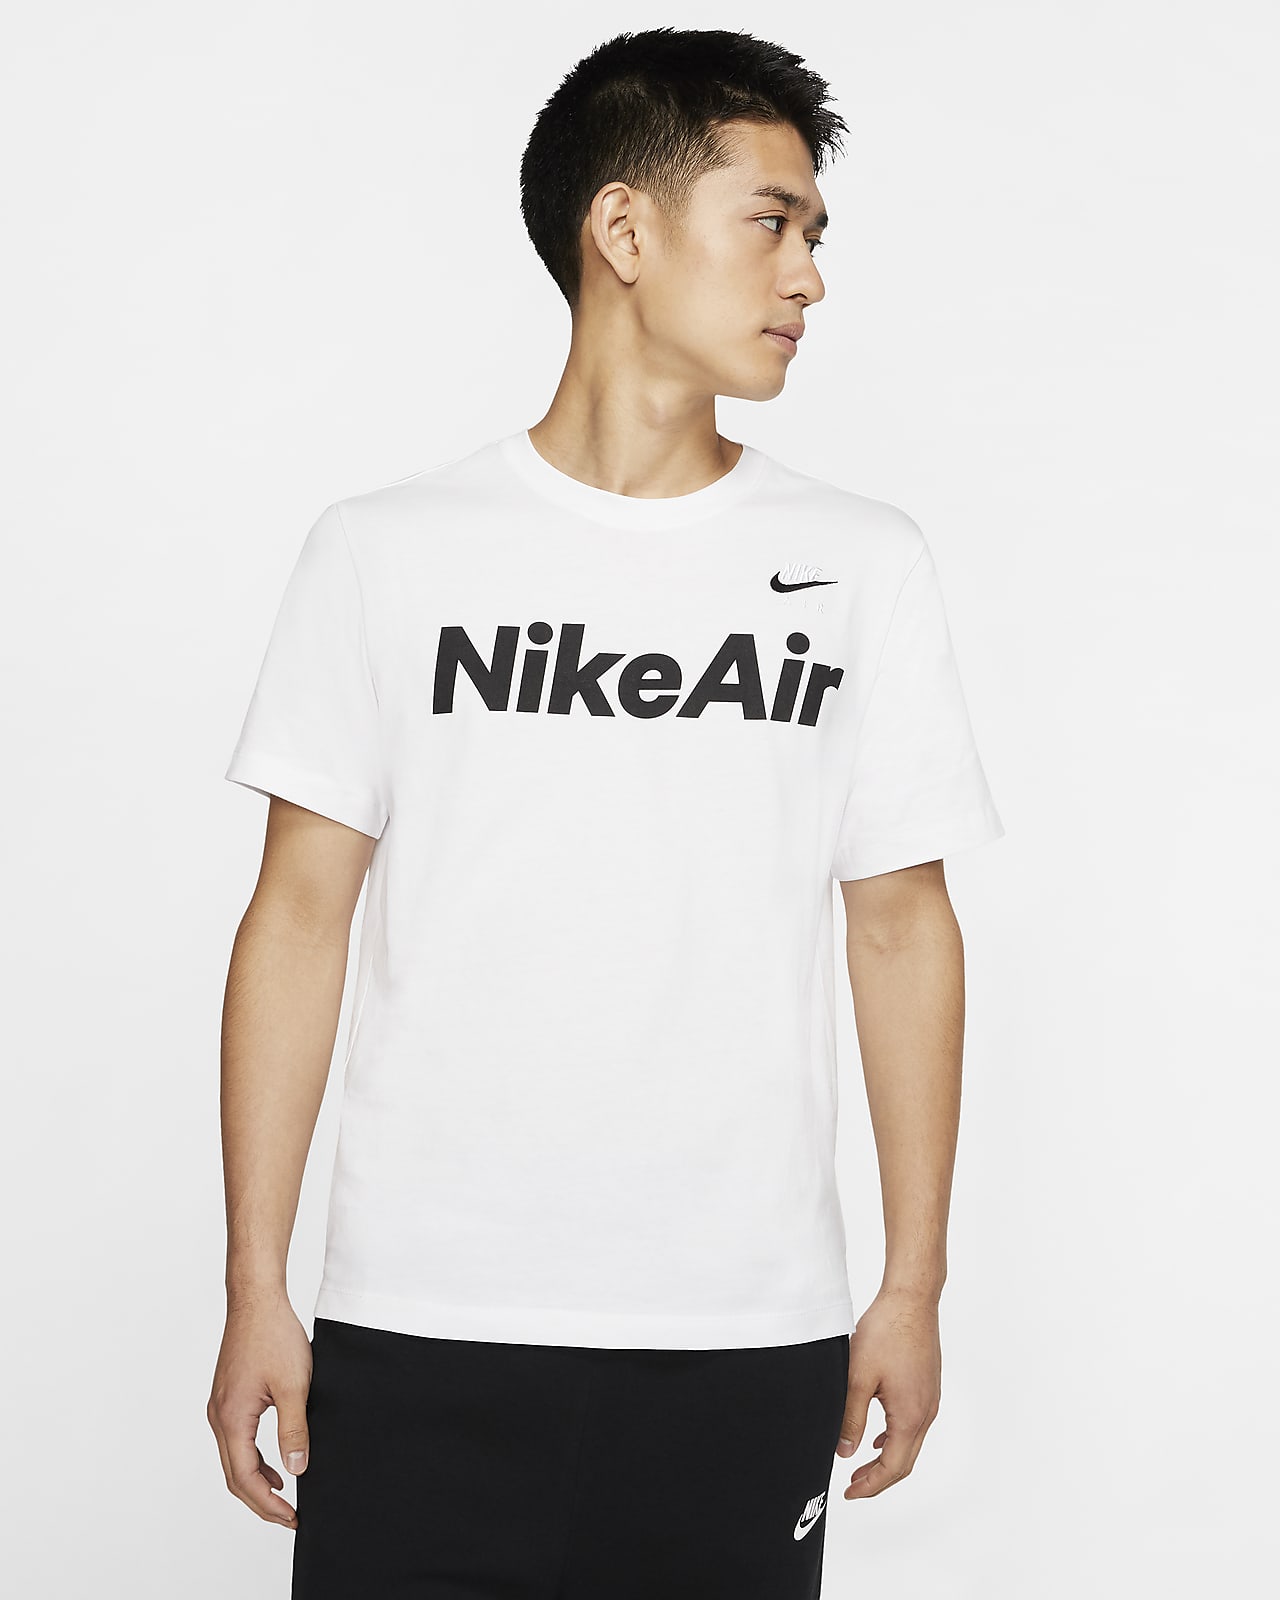 Buy > nike air t shirt green > in stock